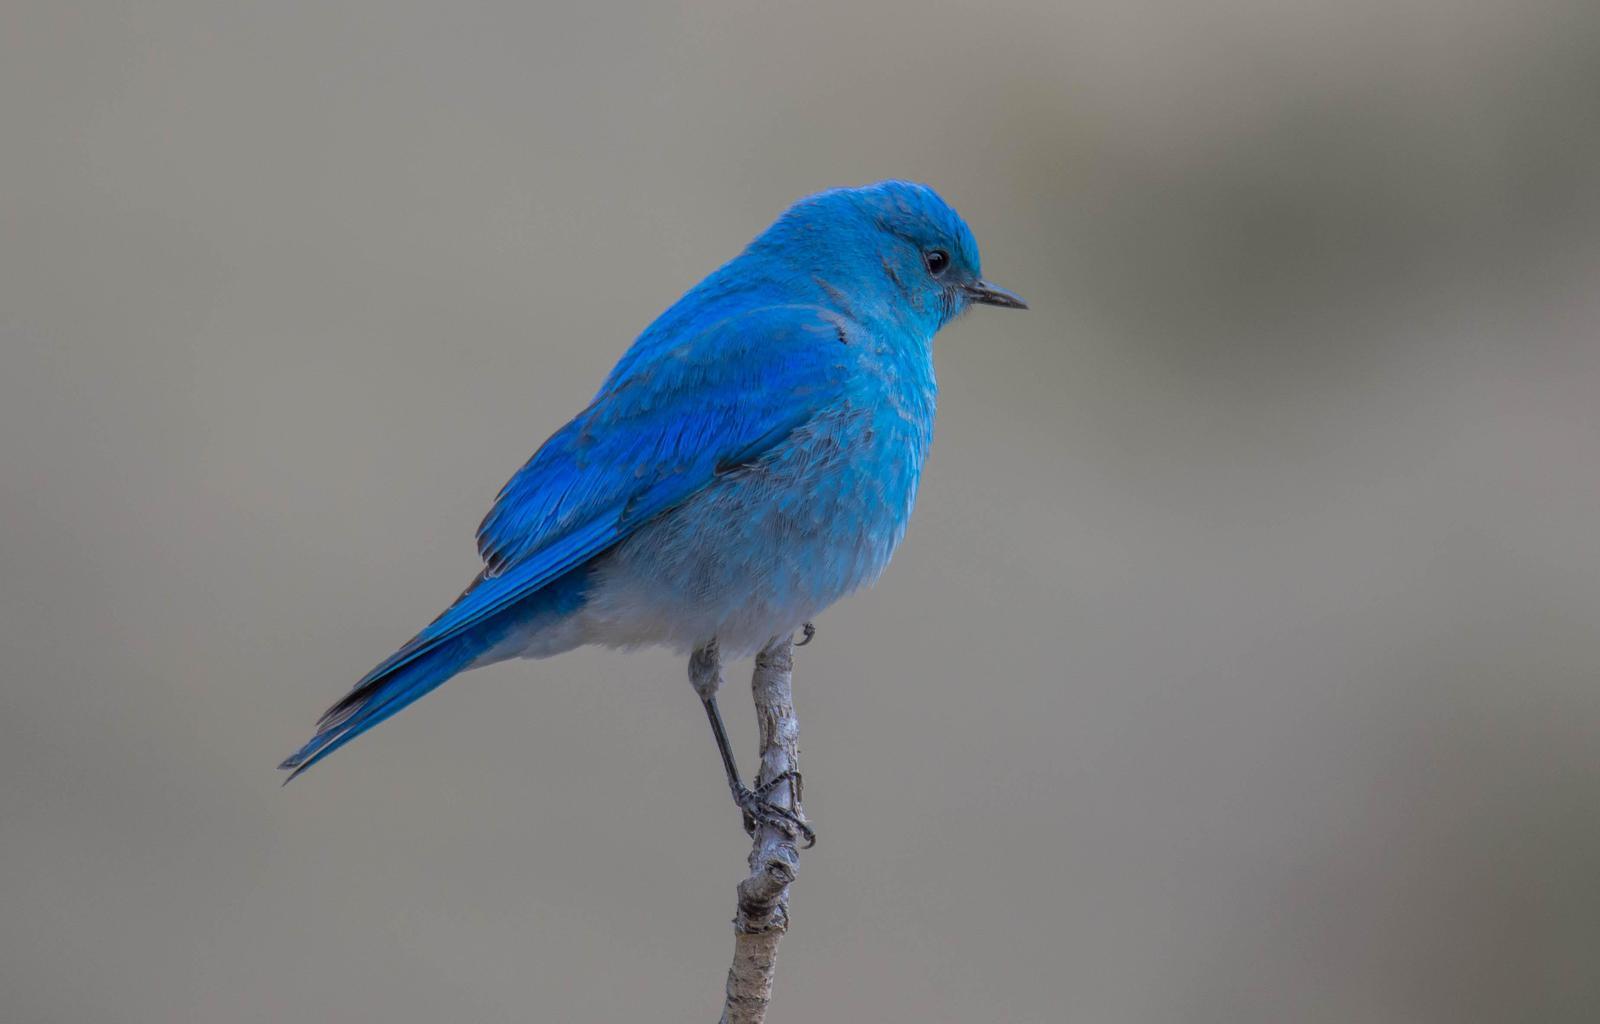 Mountain Bluebird Photo by Karen Prisby